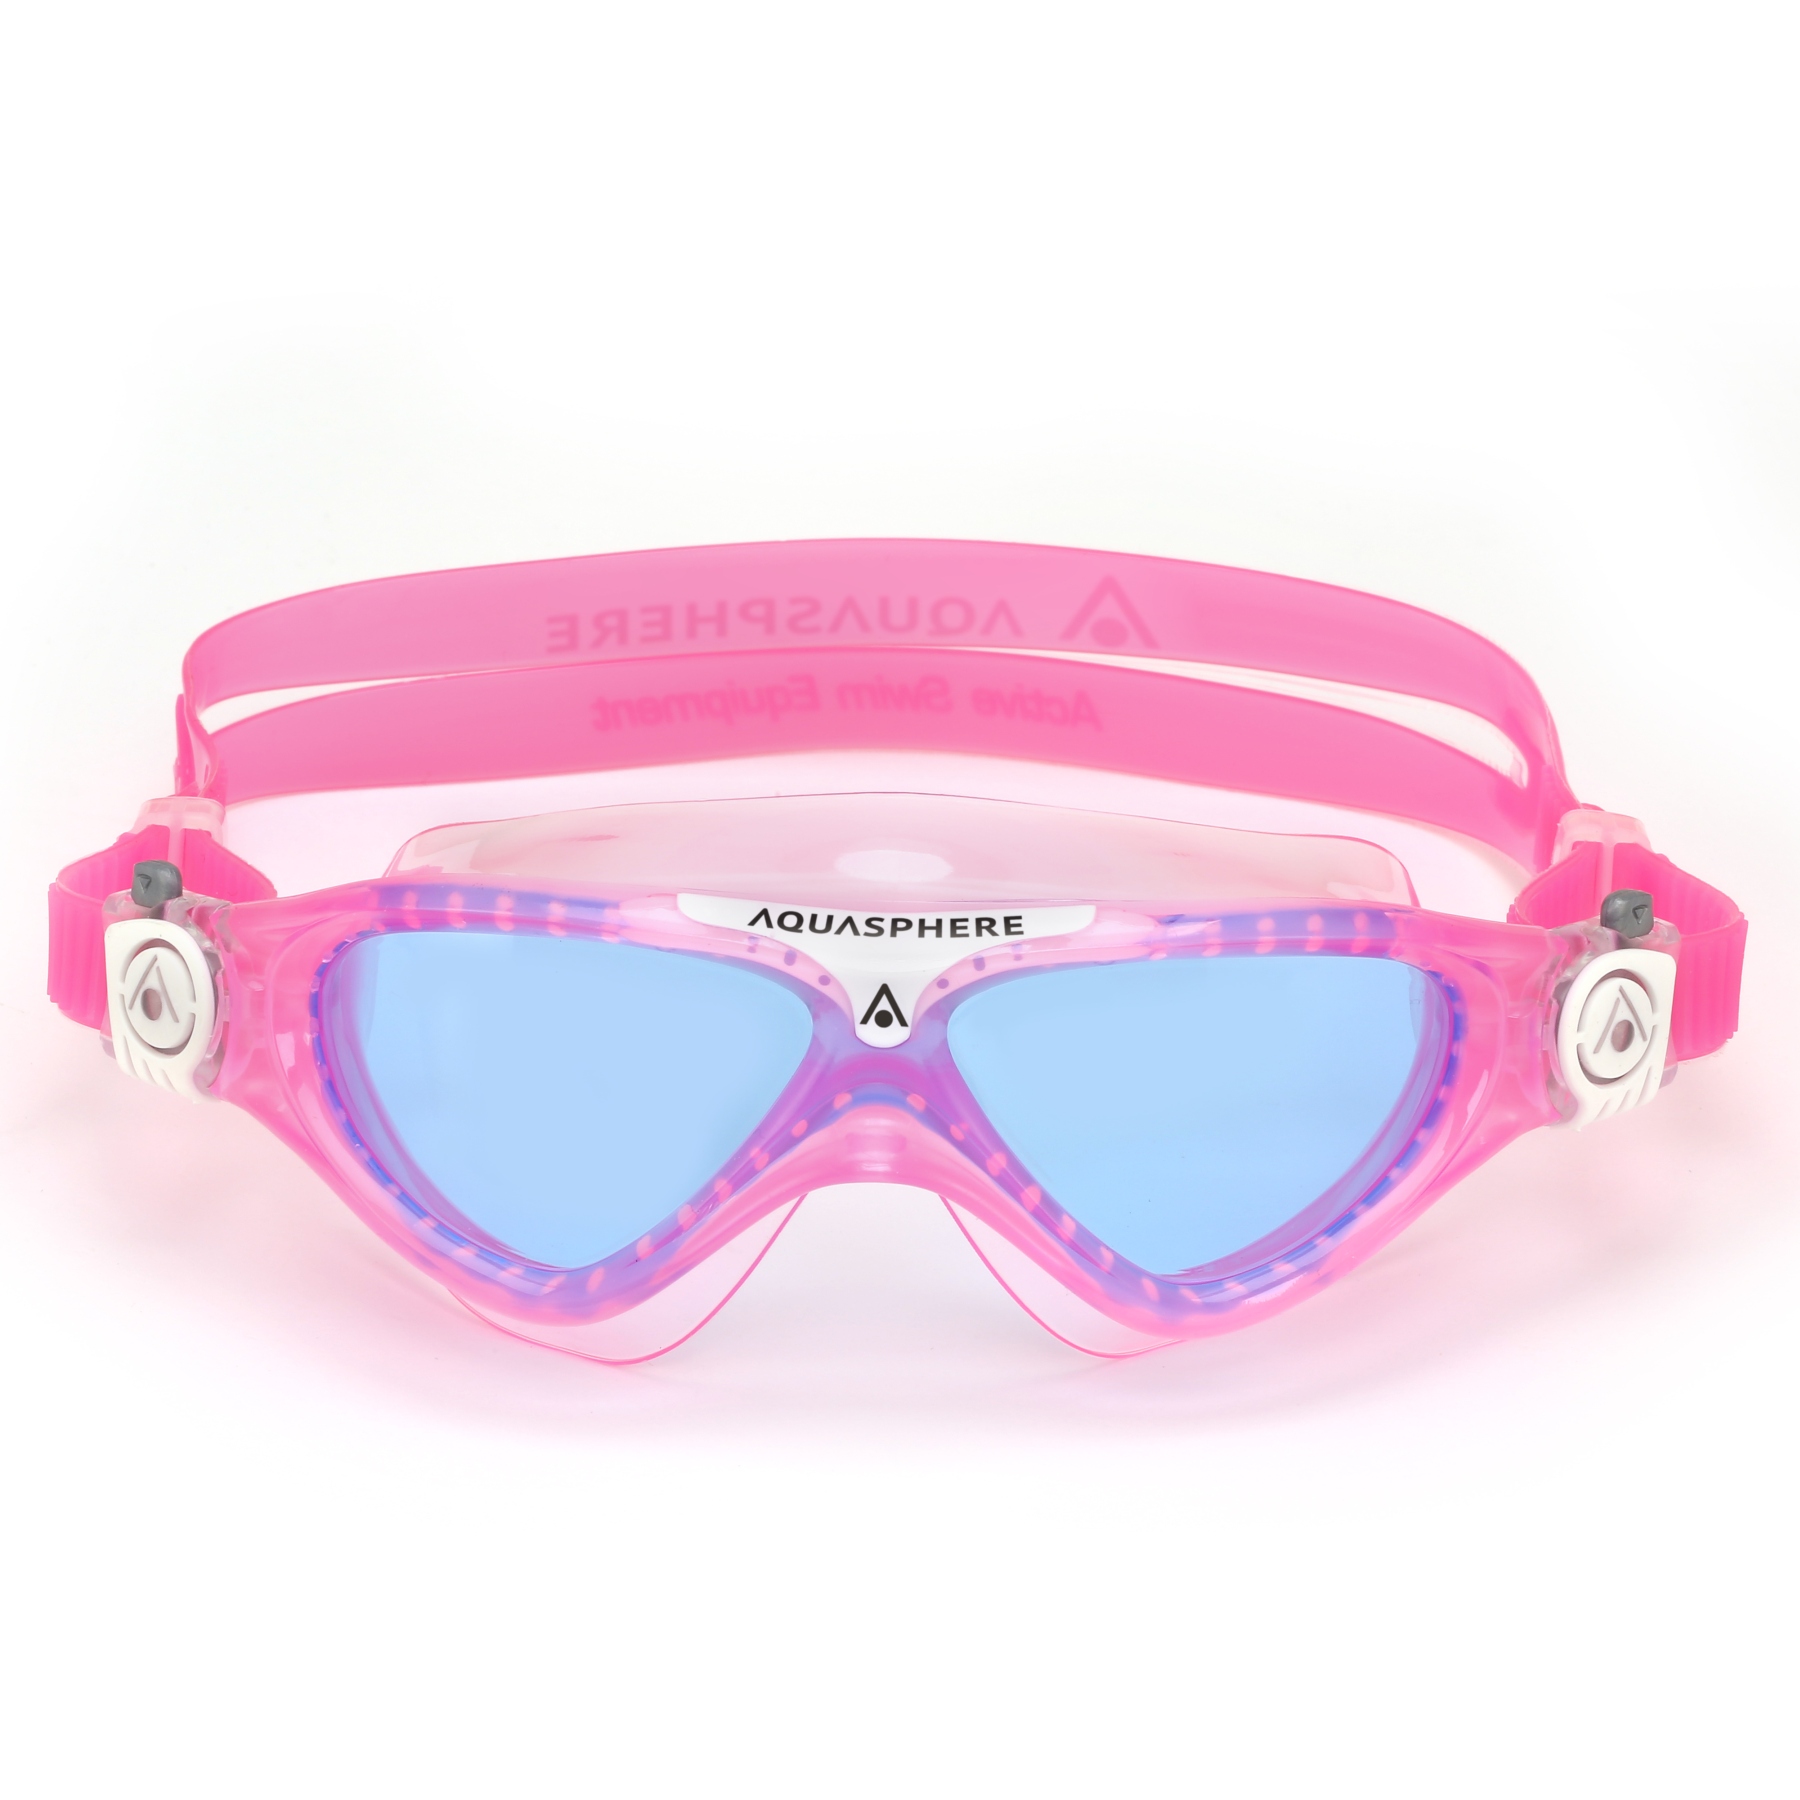 Productfoto van AQUASPHERE Vista Junior Kinderen Zwembril - Blauw getint - Roze/Wit